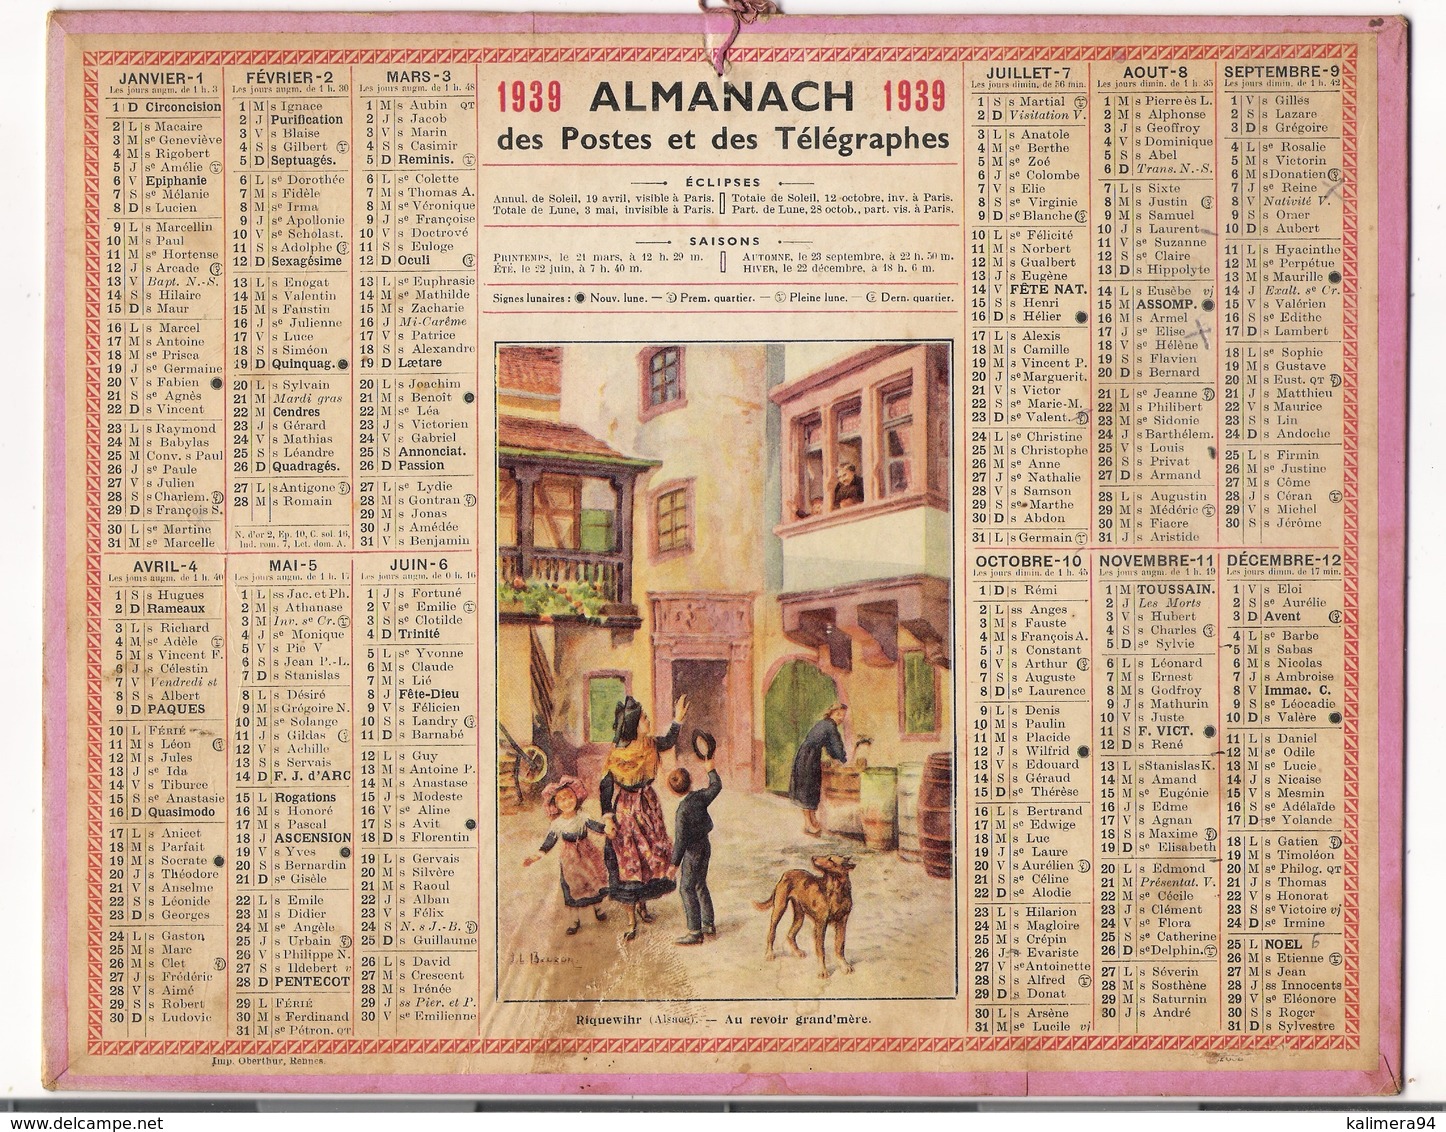 ALMANACH DES POSTES ET DES TELEGRAPHES / CALENDRIER DE 1939 / RIQUEWIRH / AU REVOIR GRAND' MÈRE / Dép. SEINE - Grand Format : 1921-40